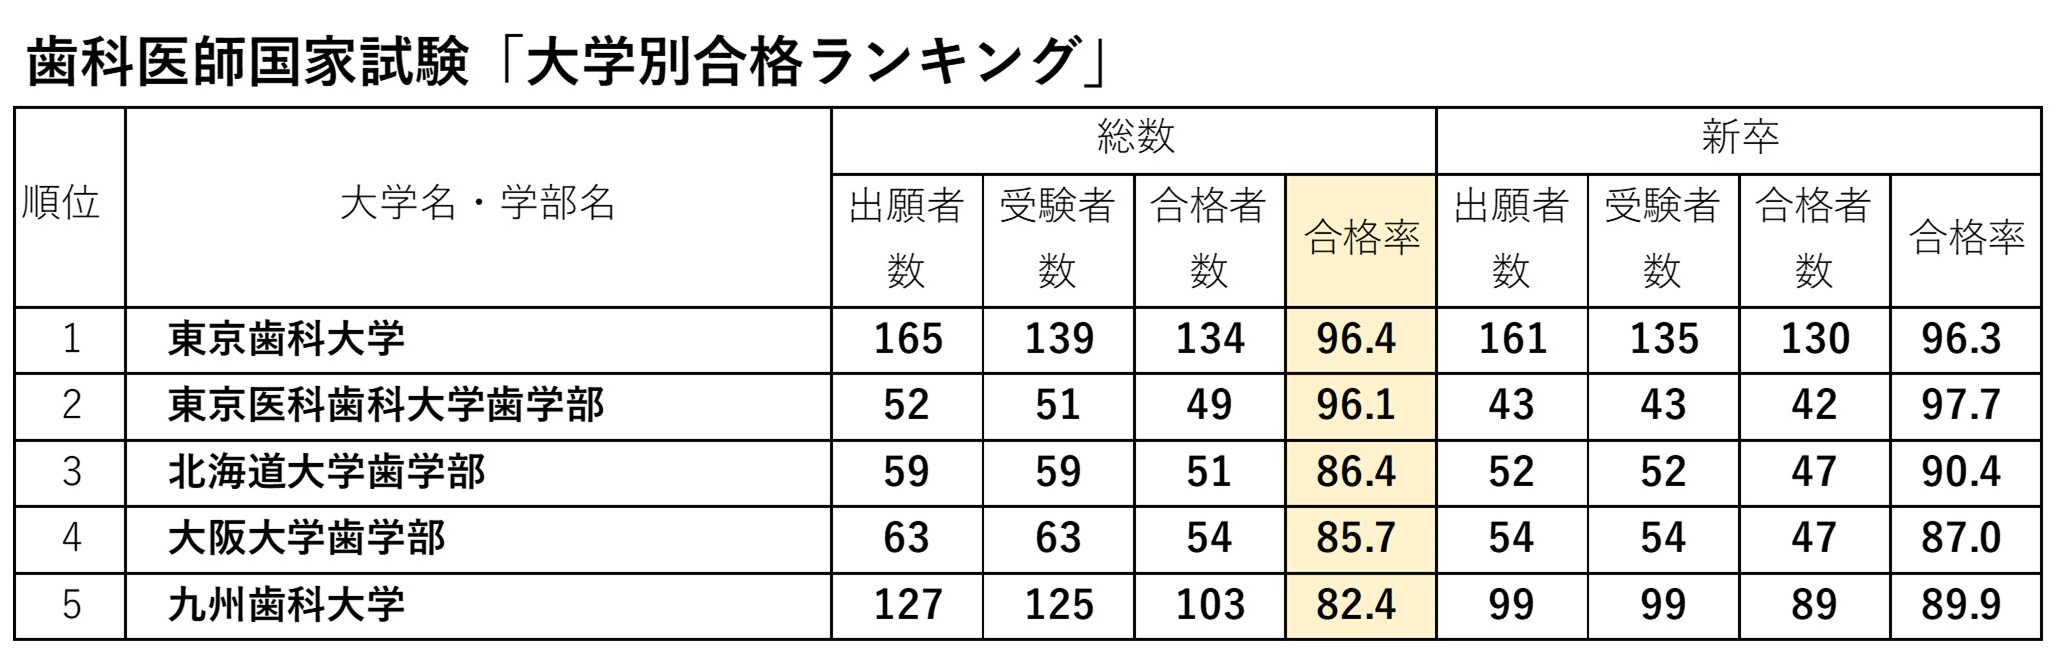 歯科医師試験 大学別合格ランキング 1位東京歯科 最下位は 富裕層向け資産防衛メディア 幻冬舎ゴールドオンライン